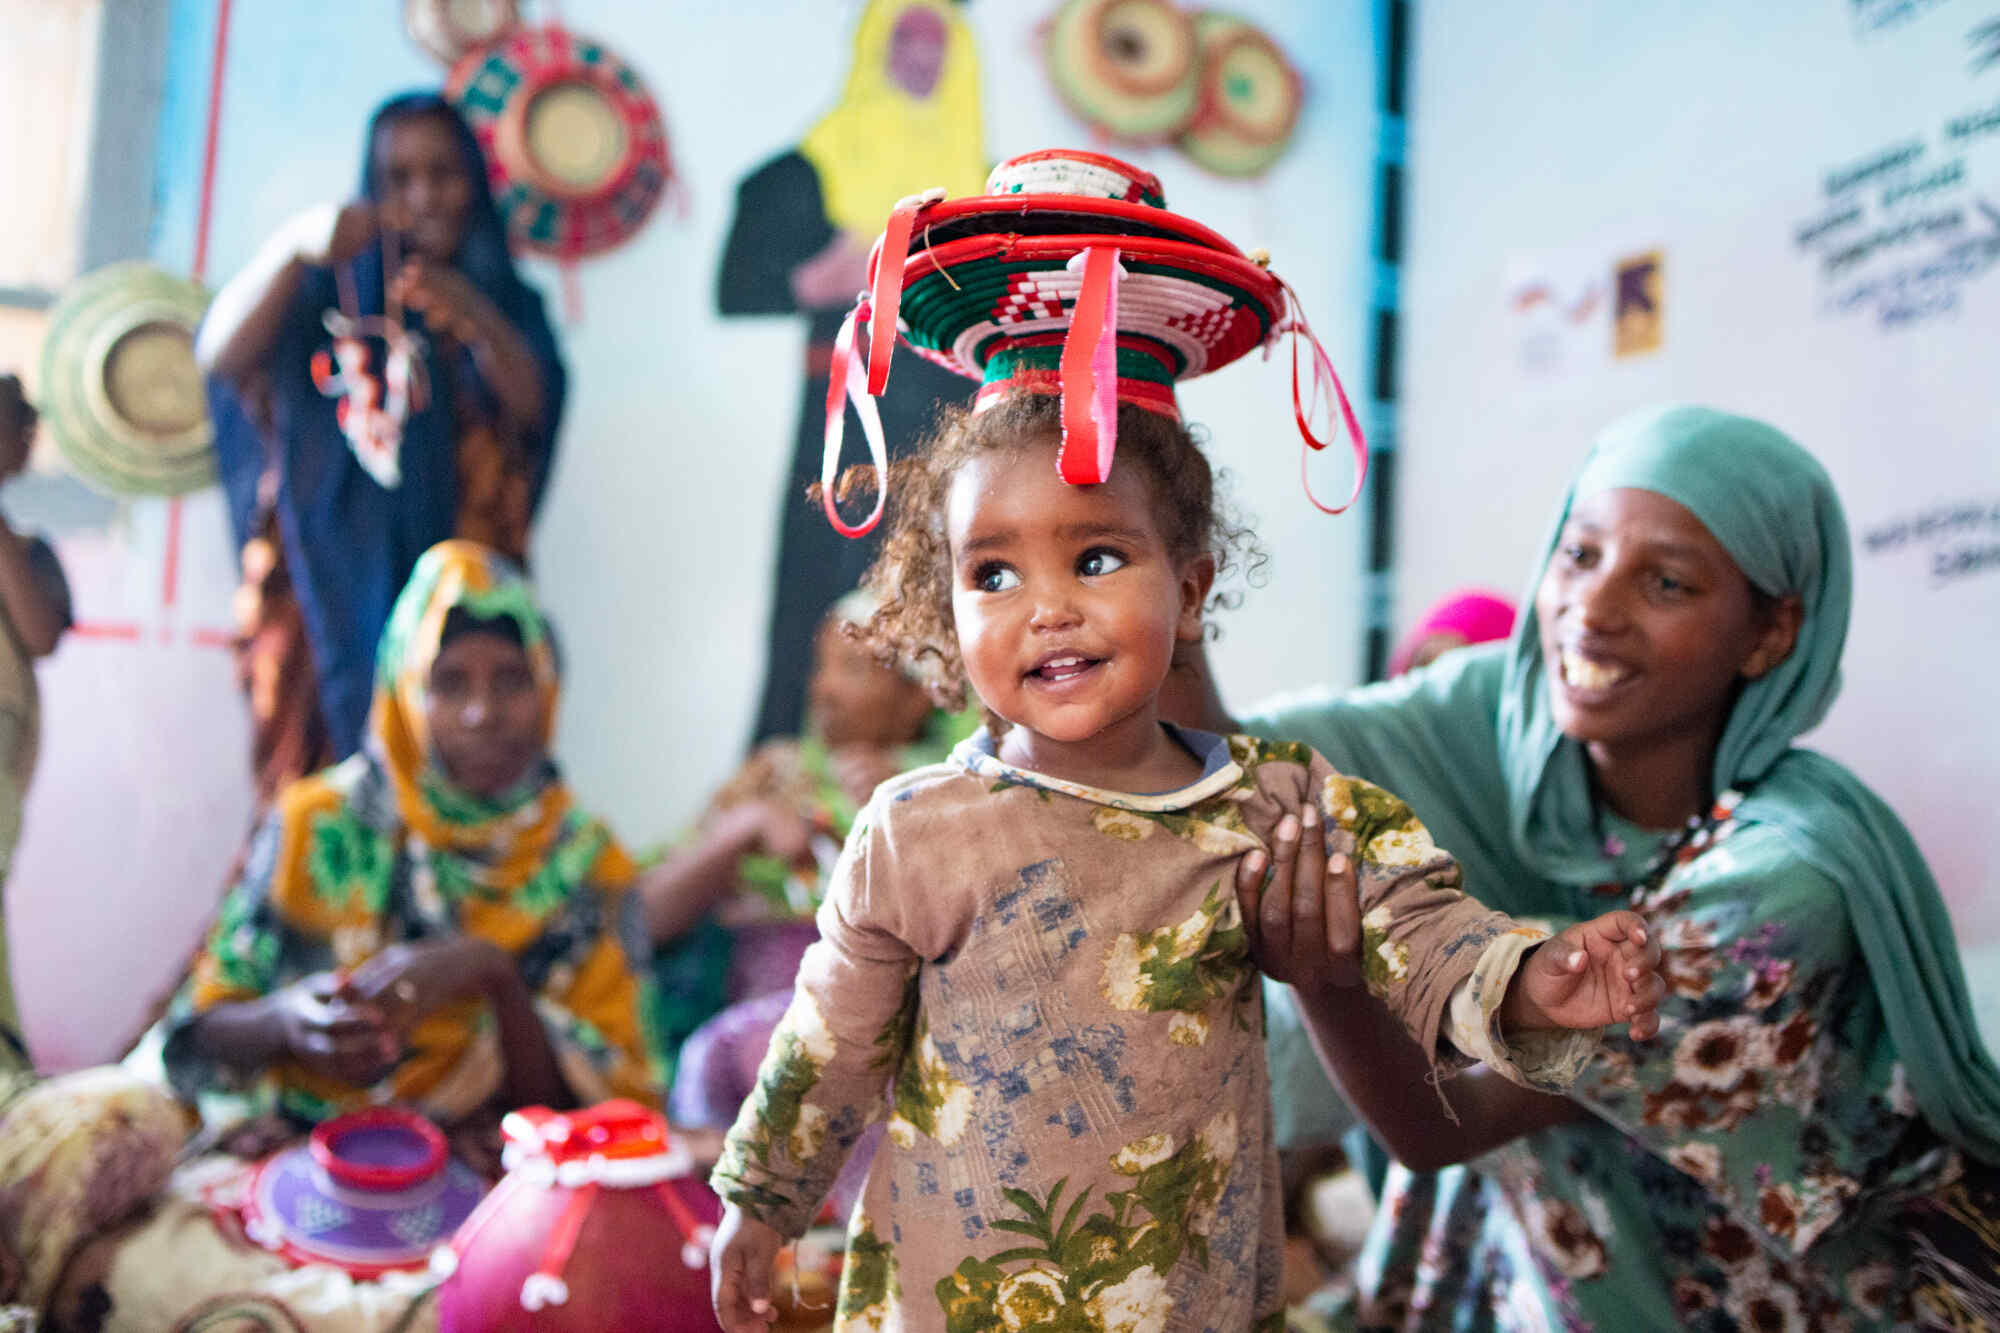 Ein kleines Mädchchen lacht während sie typisch äthiopische Handwerkskunst präsentiert